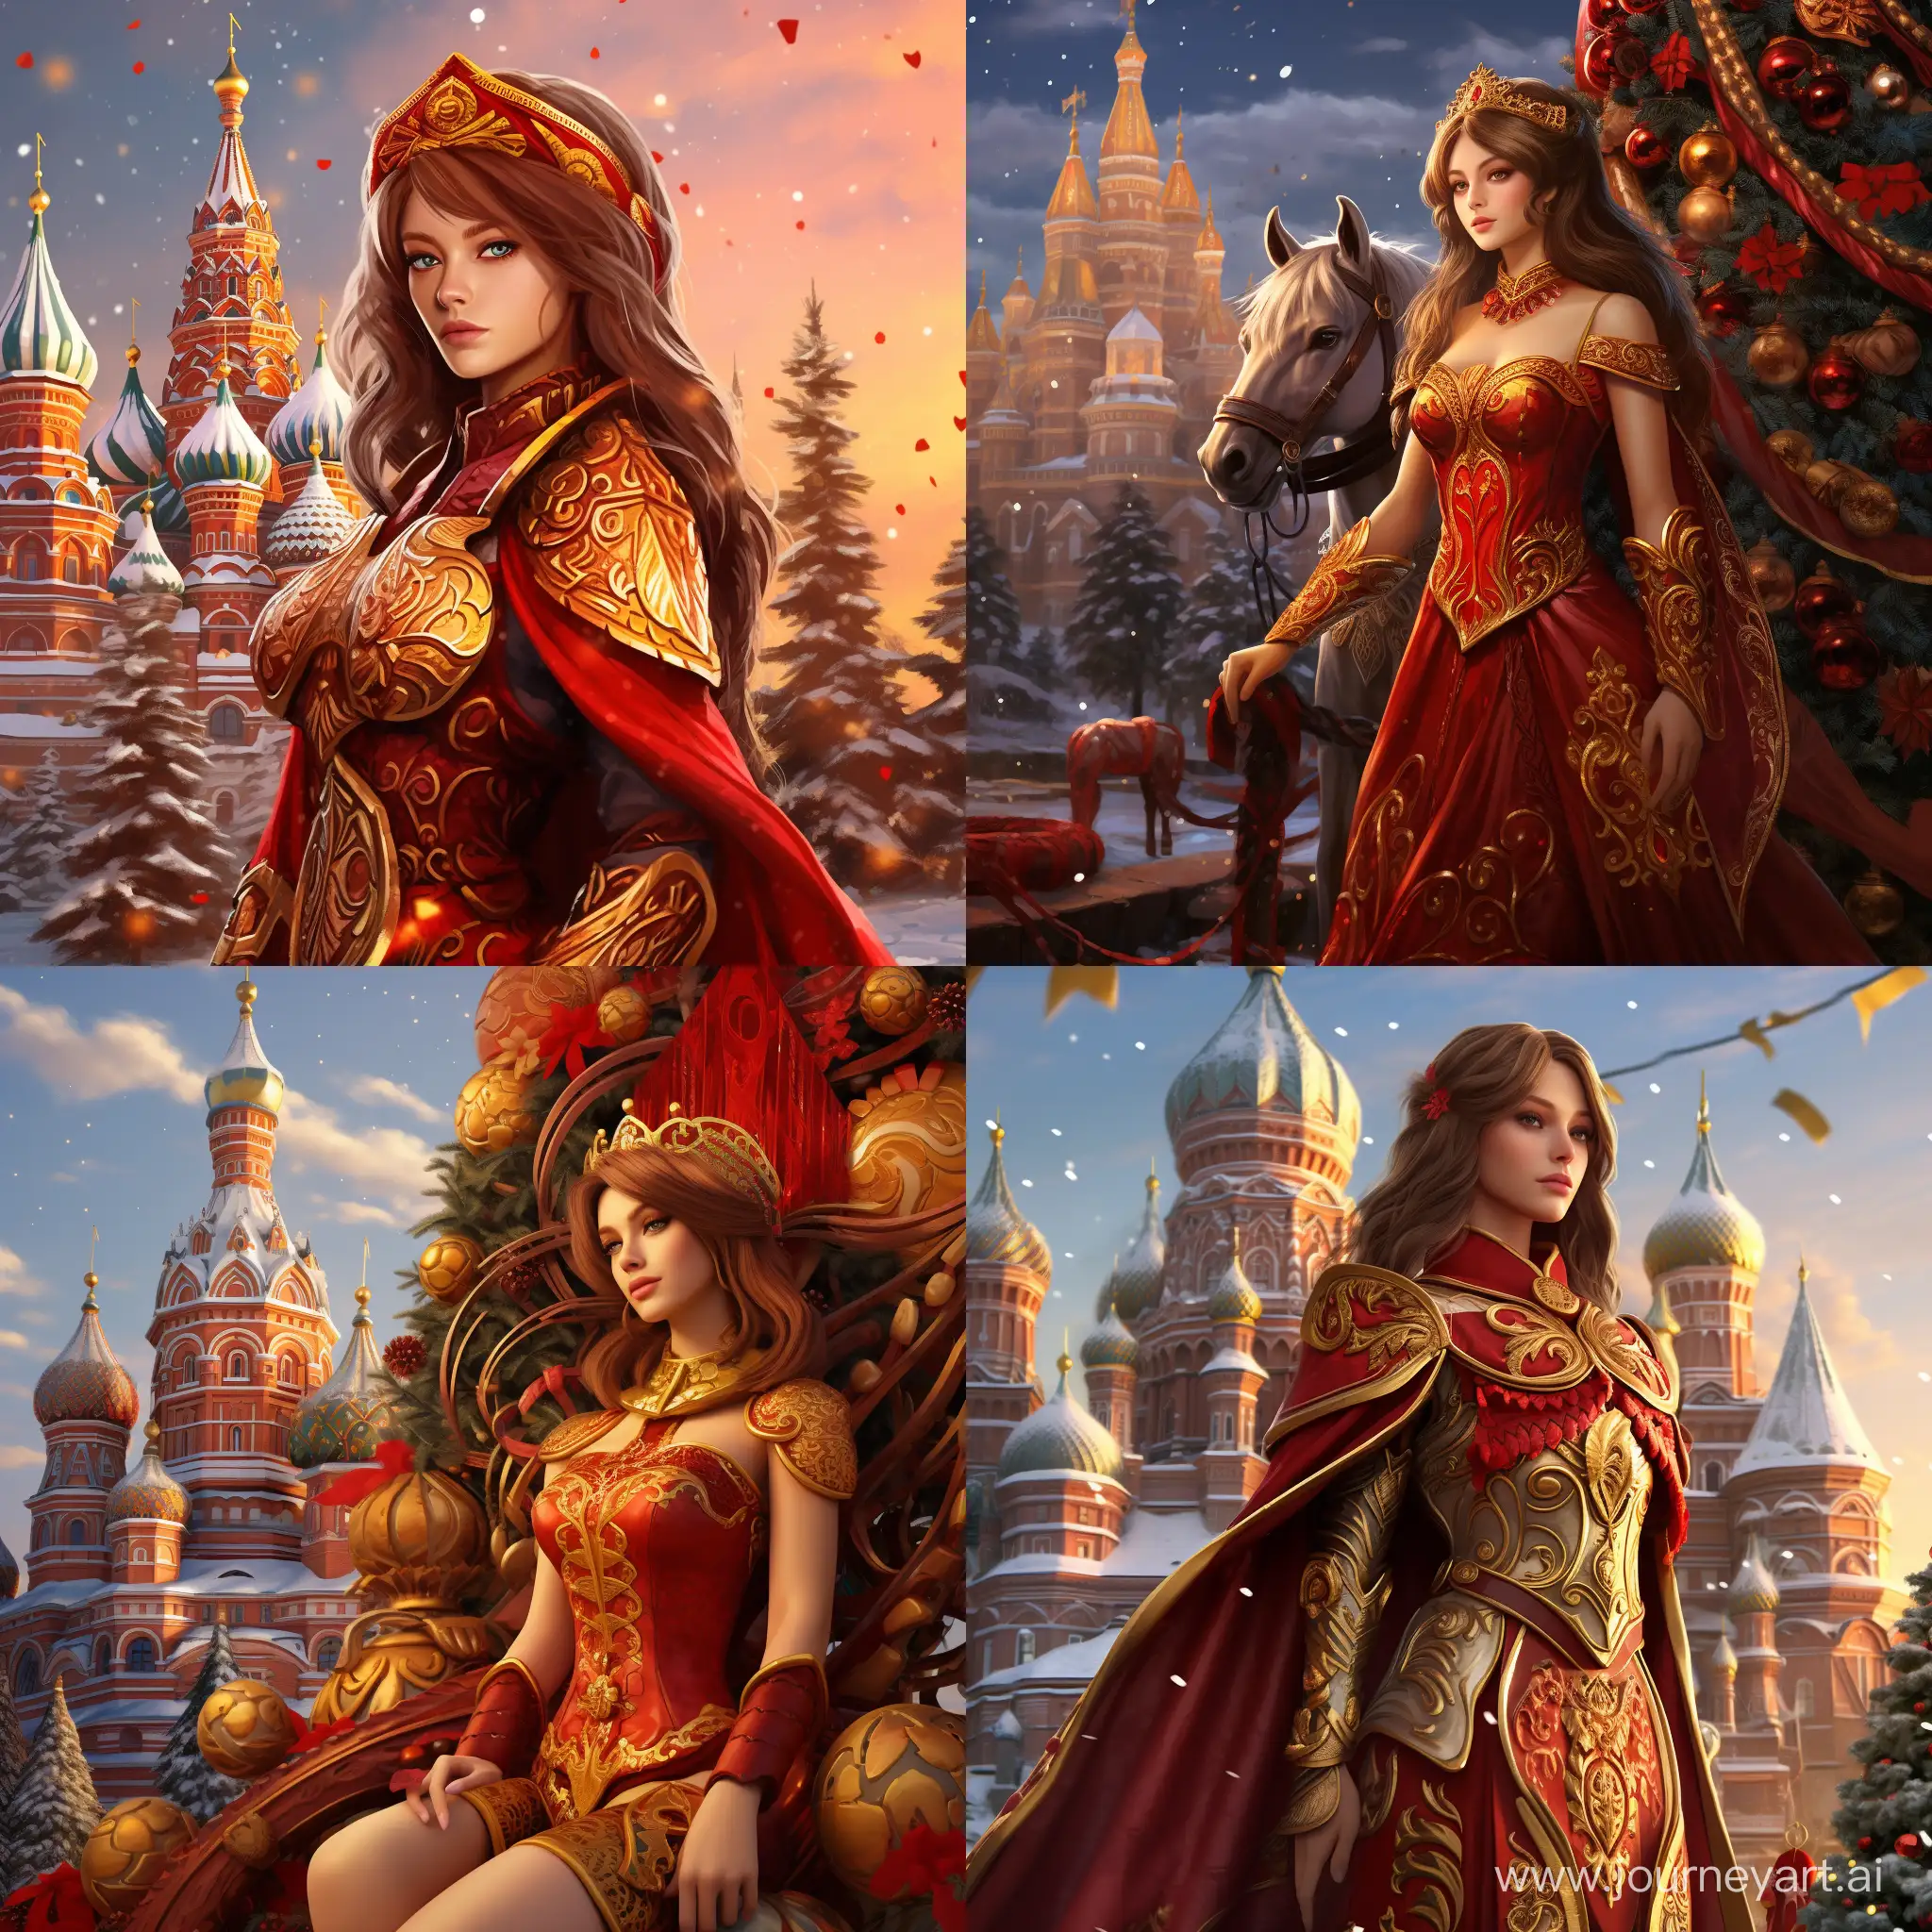 Персонаж World of warcraft Алекстраза на фоне новогодней ёлки и кремля